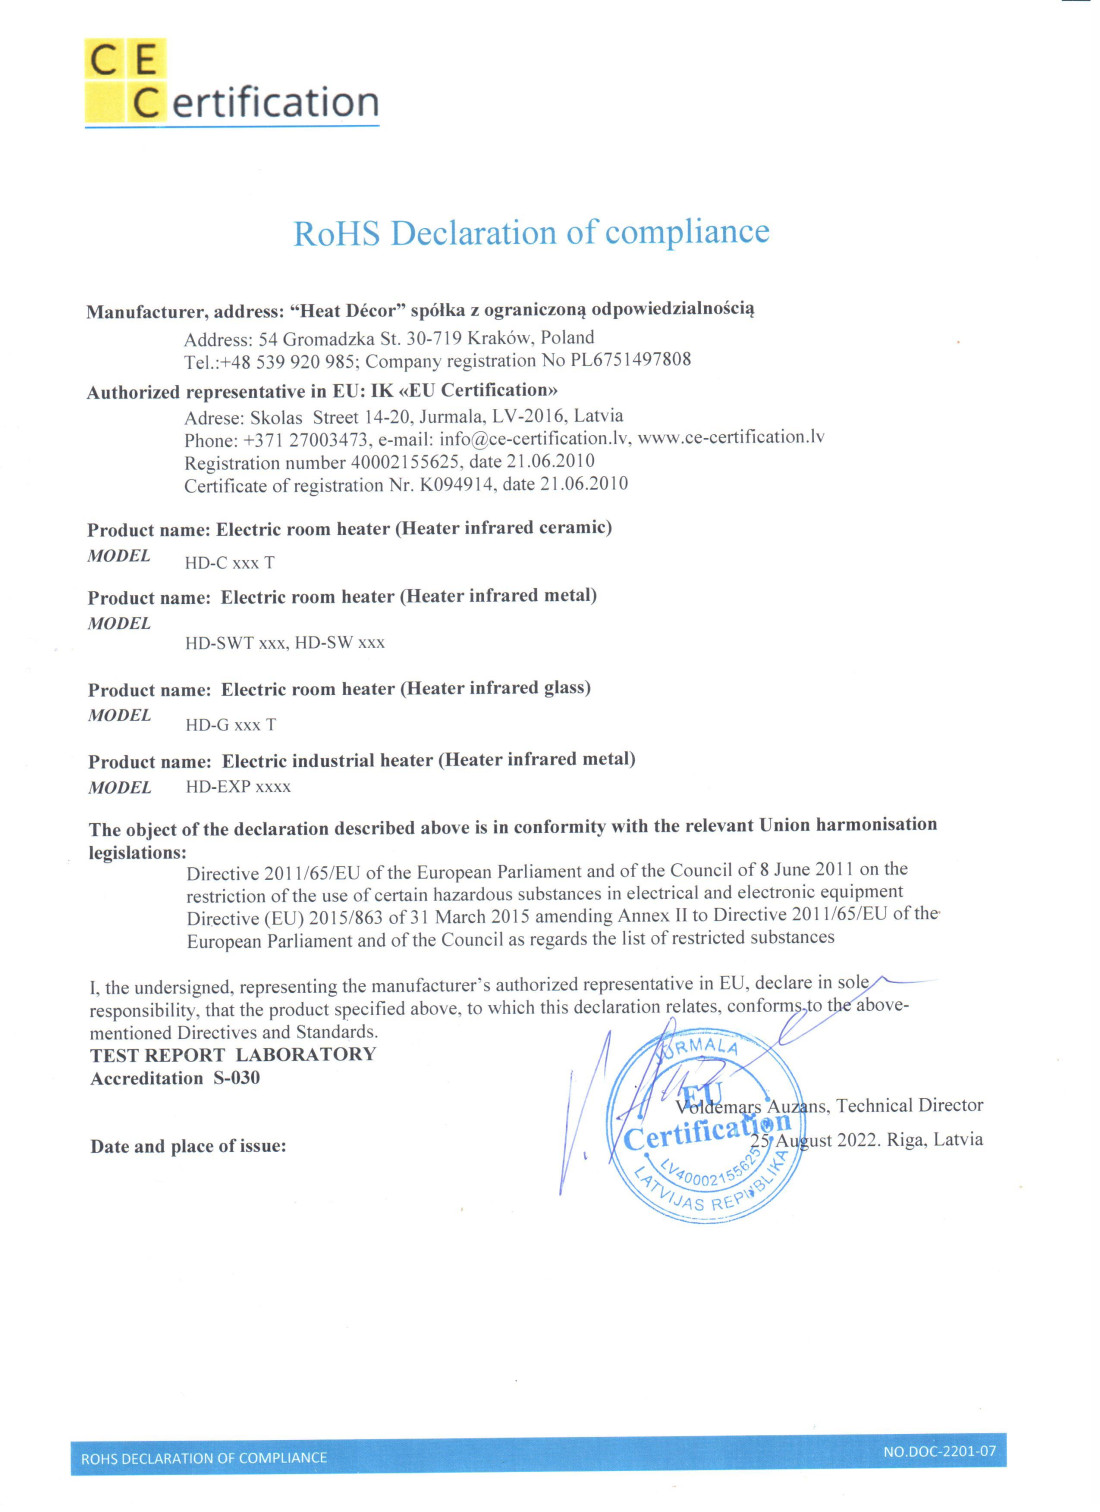 RoHS atbilstības deklarācija par bīstamo vielu ierobežošanu elektriskās un elektroniskās iekārtās